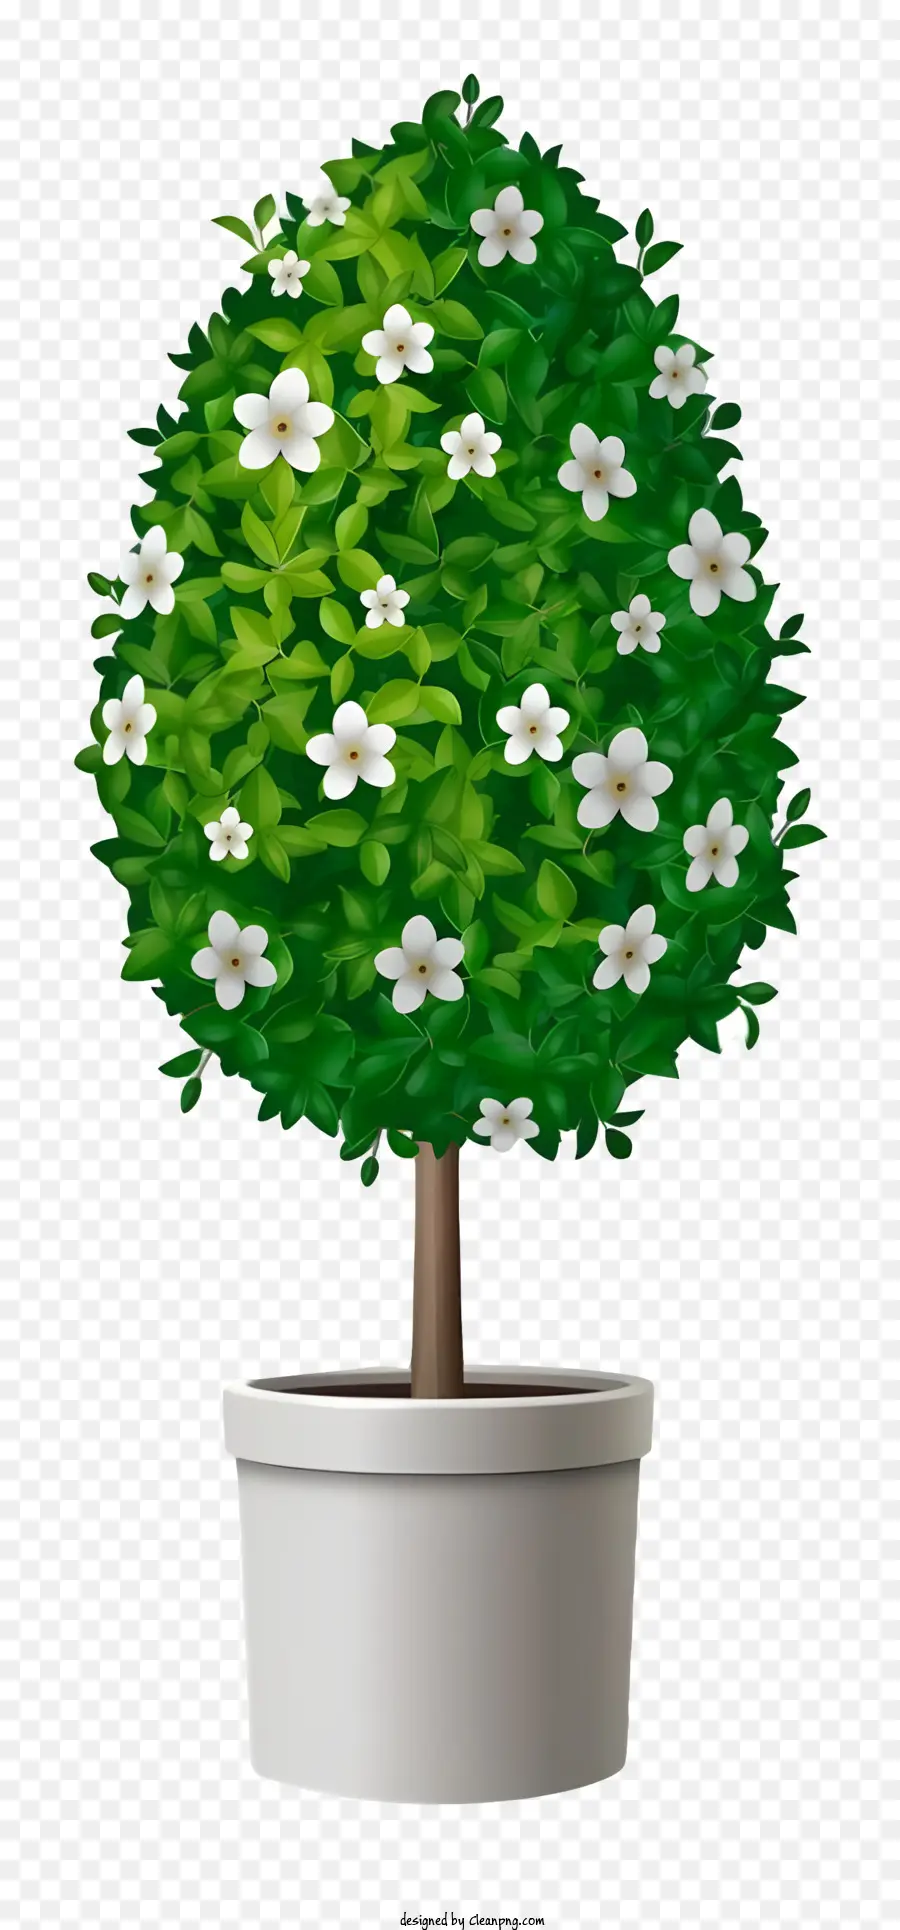 Topf Pflanze buschige Pflanze weiße Blüten dunkle Oberfläche Blätter - Kleine Topfpflanze mit weißen Blüten